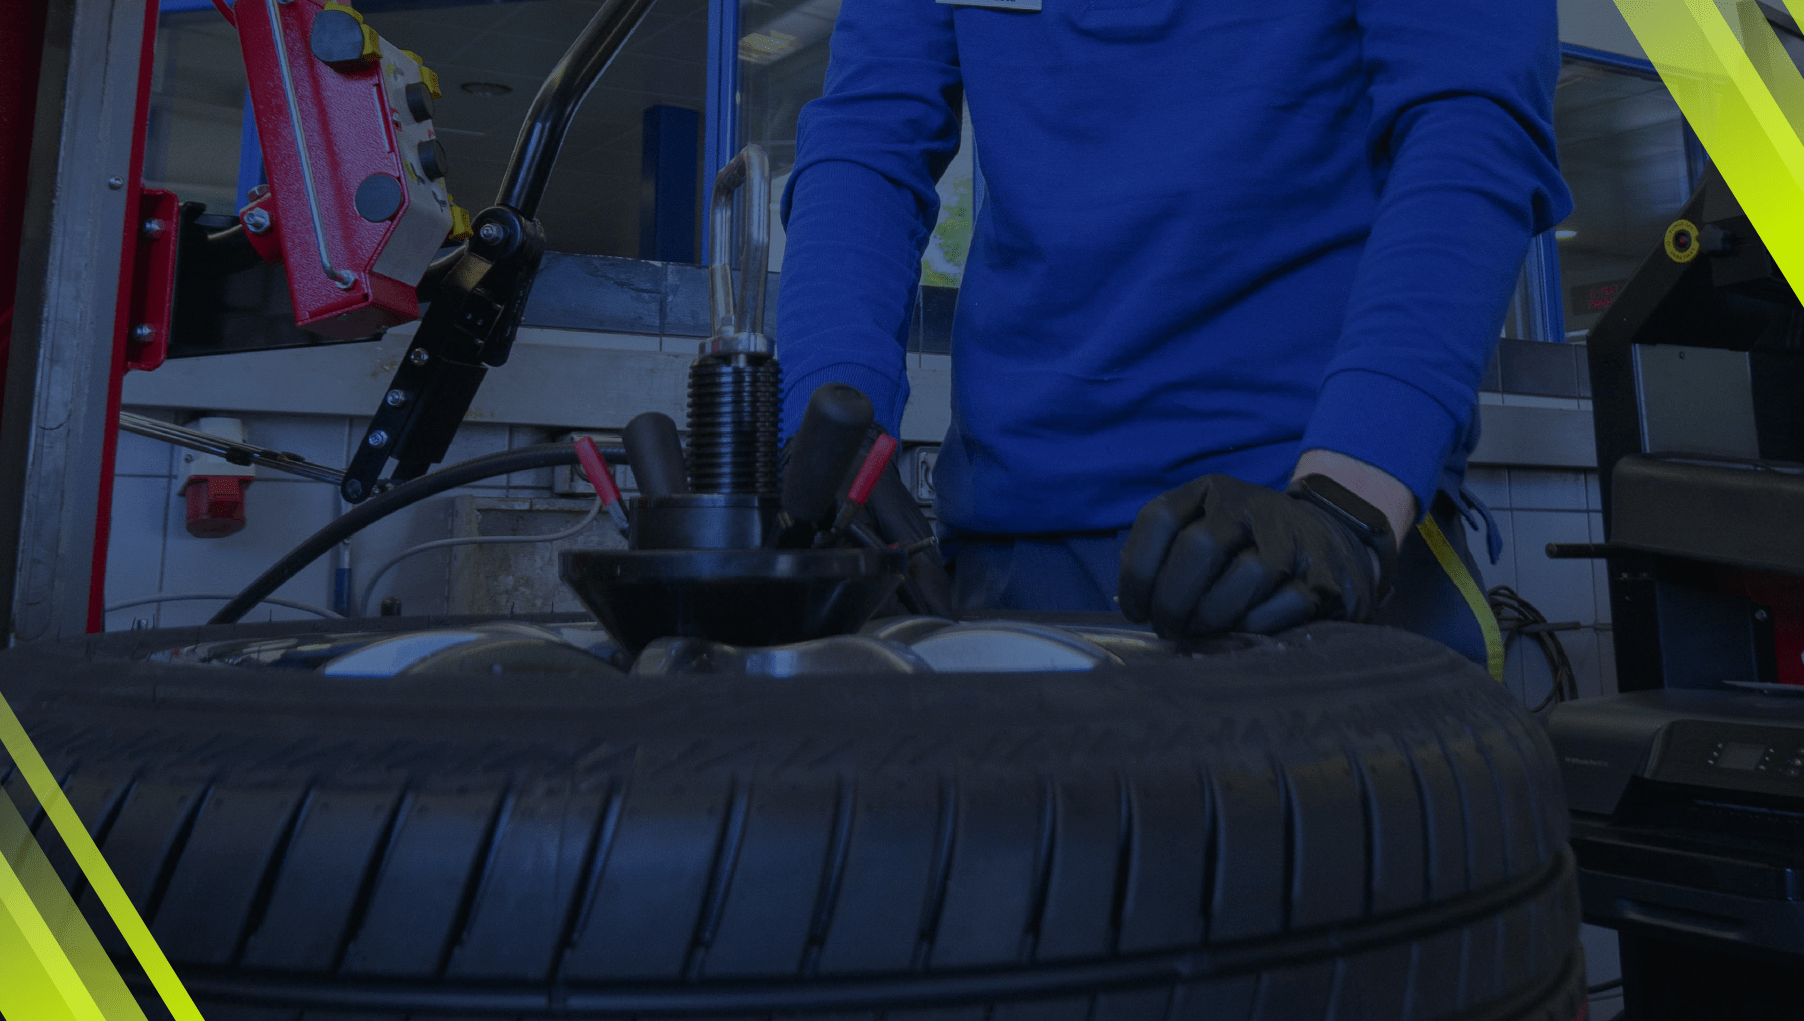 Trocar pneus - aconselhe-se com um profissional da fix'n'go.